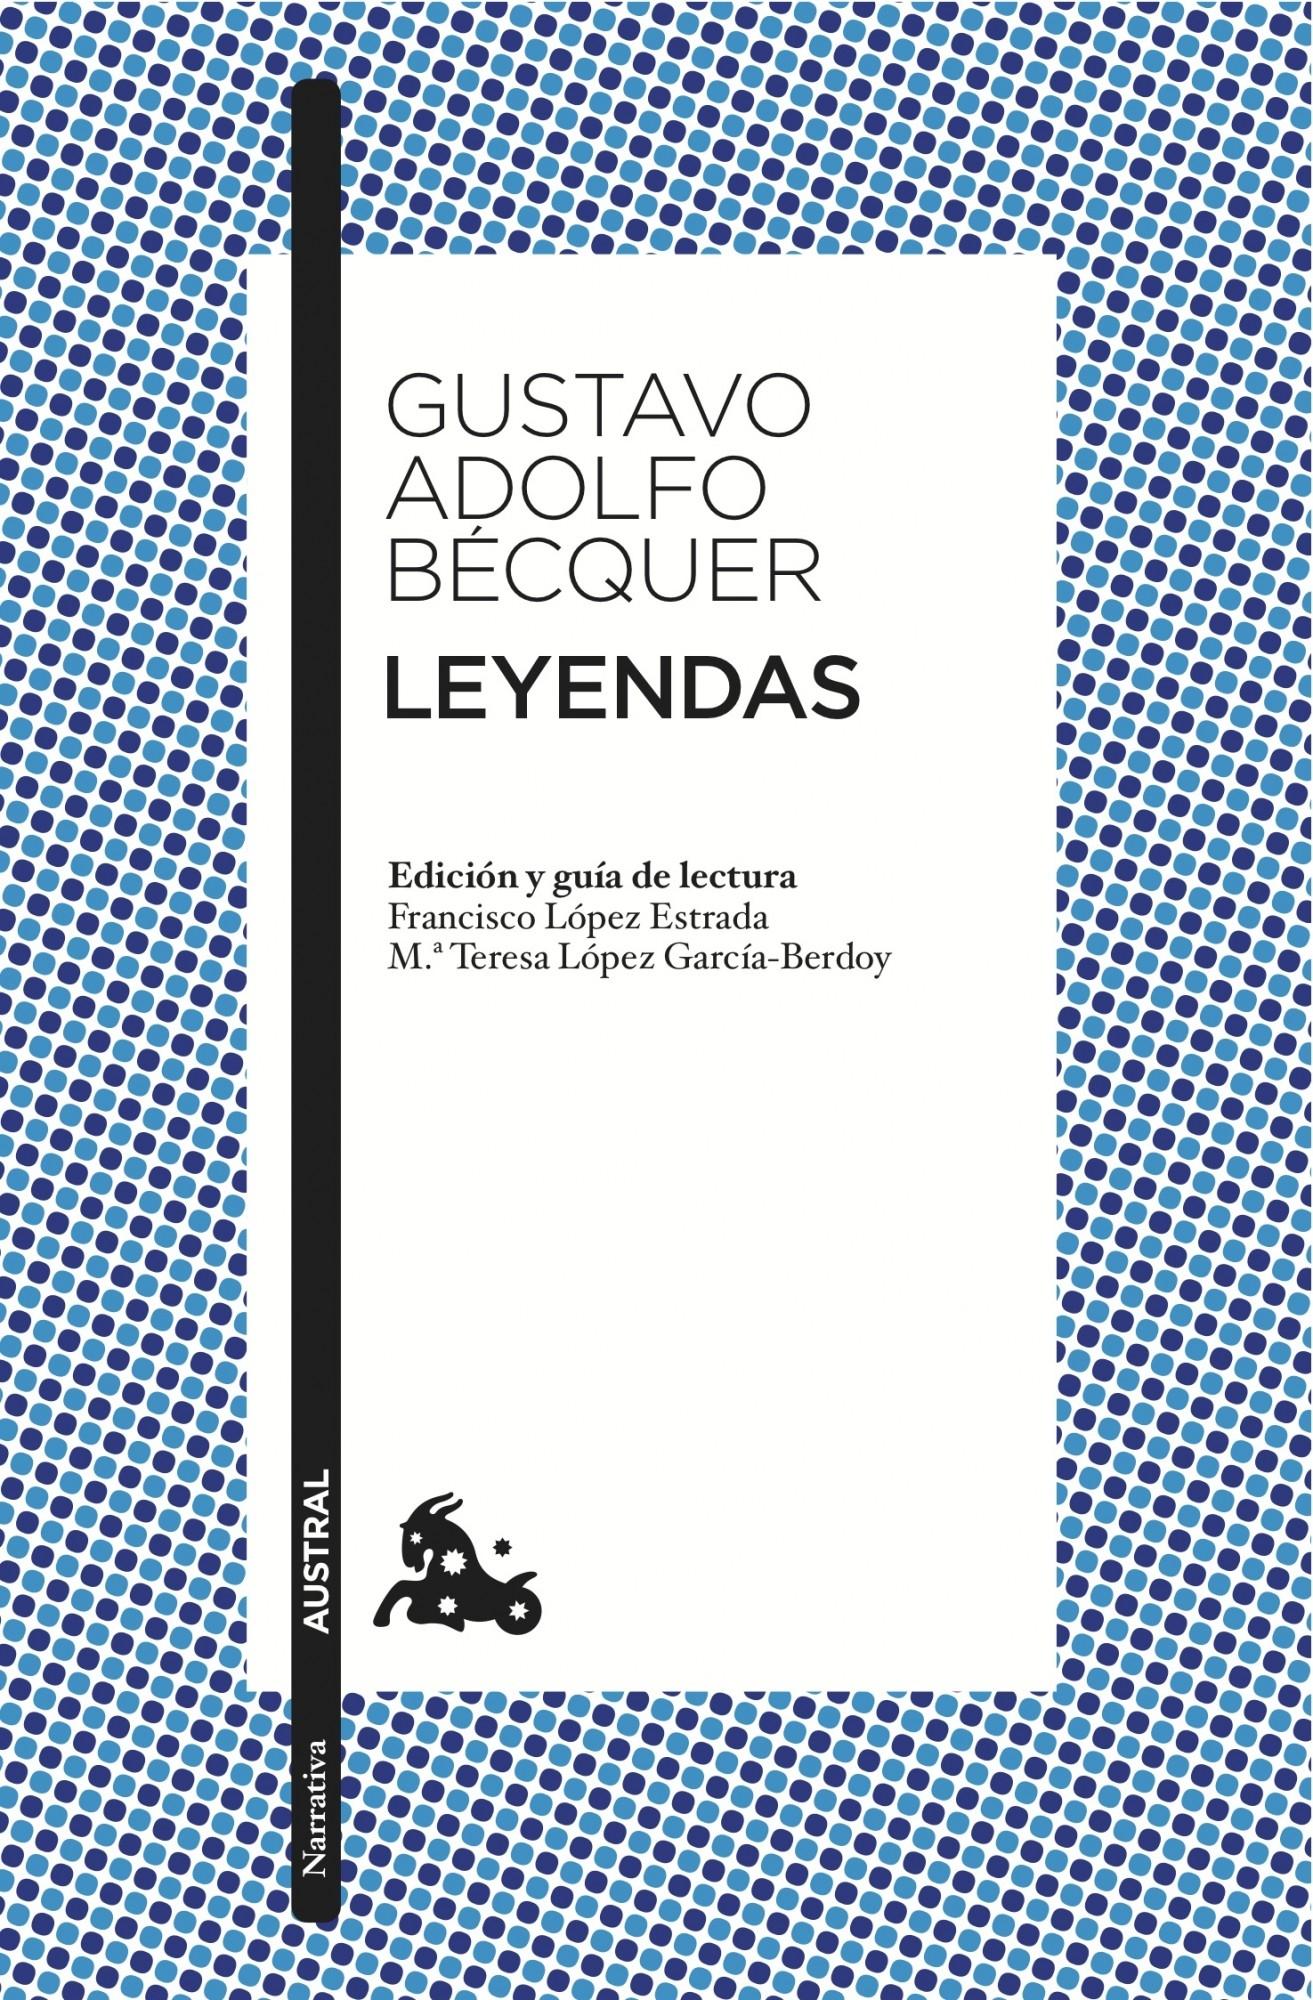 Leyendas "Edición de Francisco López Estrada y Mª Teresa López Gracía-Berdoy"